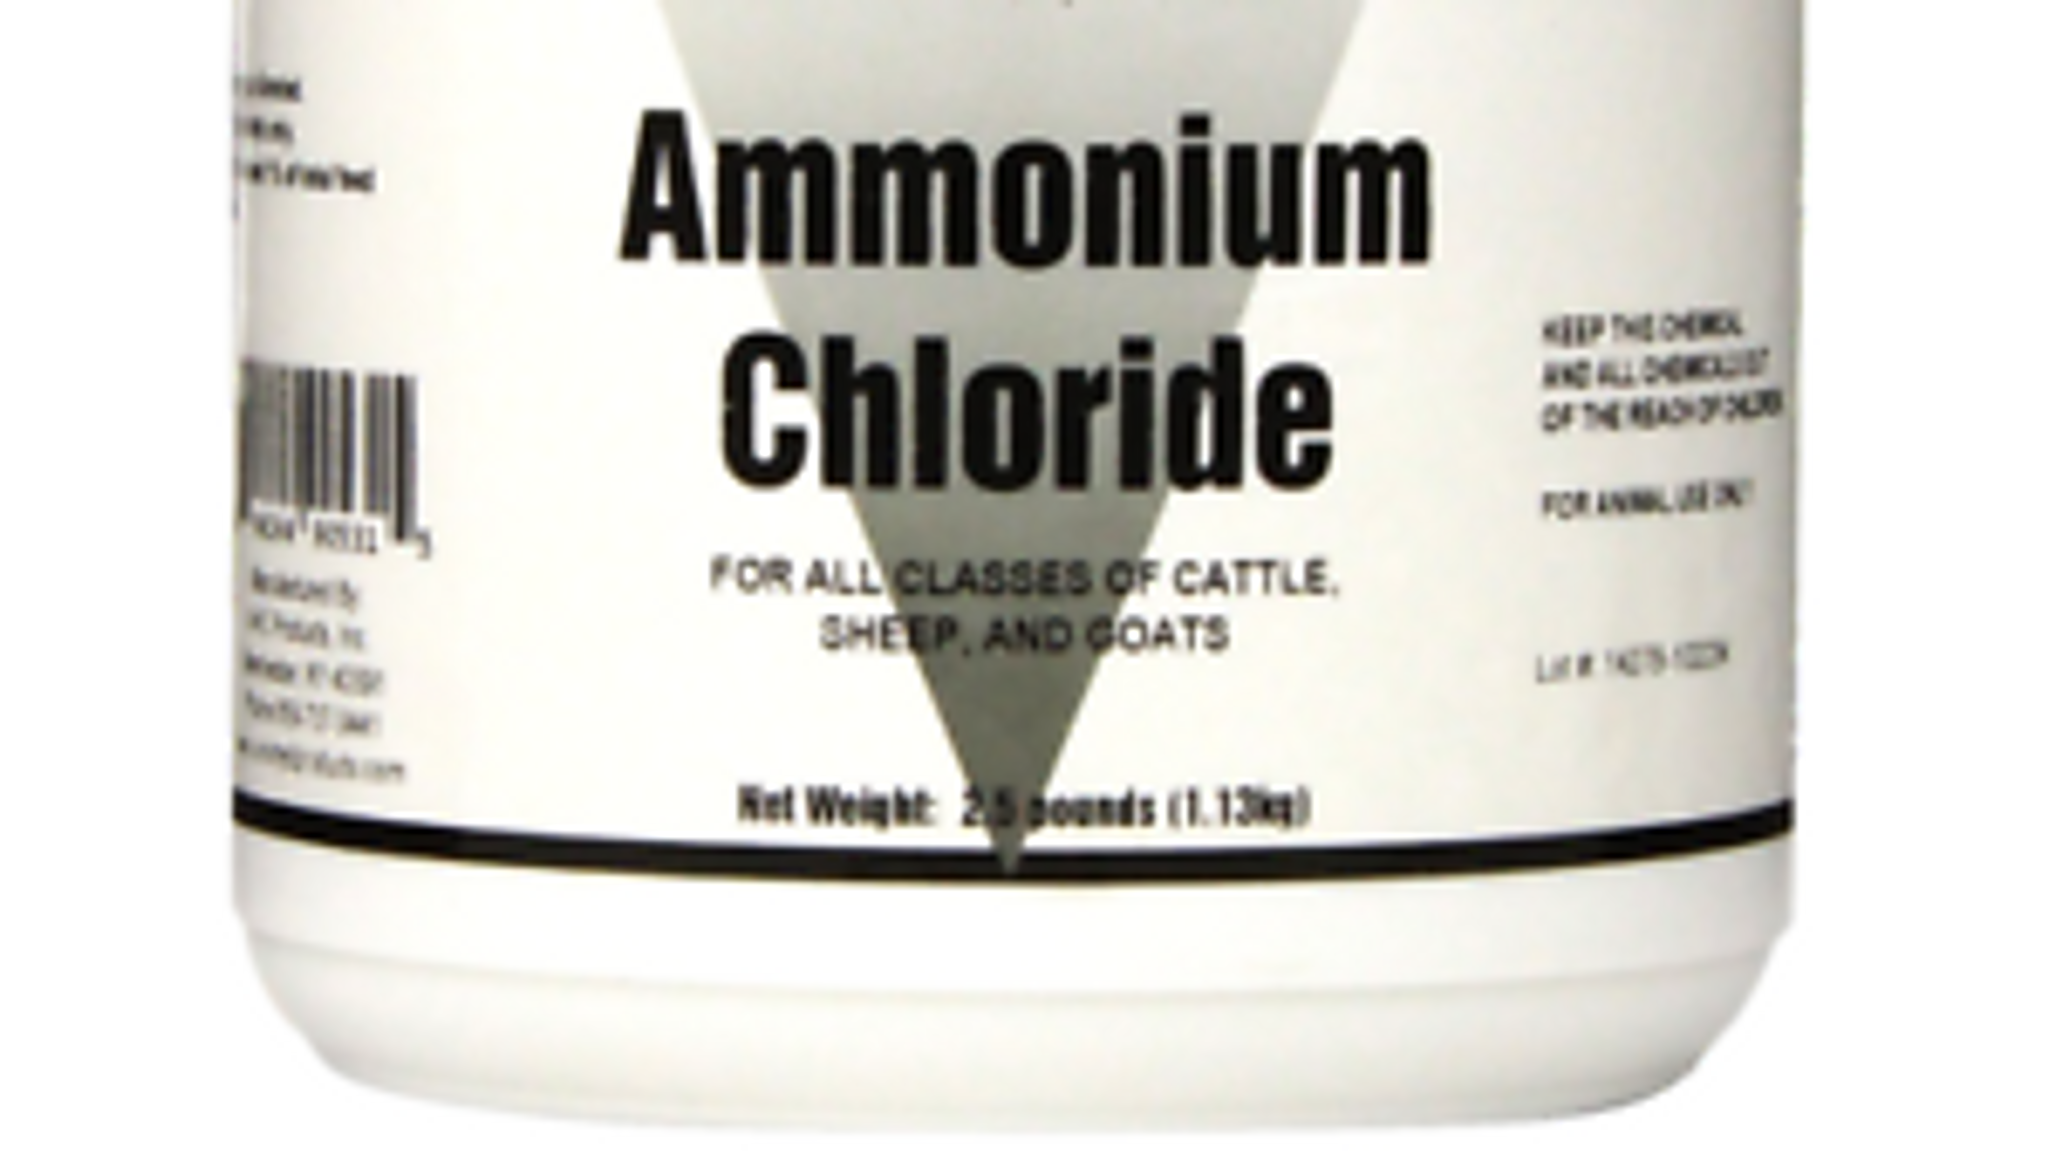 Ammonium Chloride for Animals